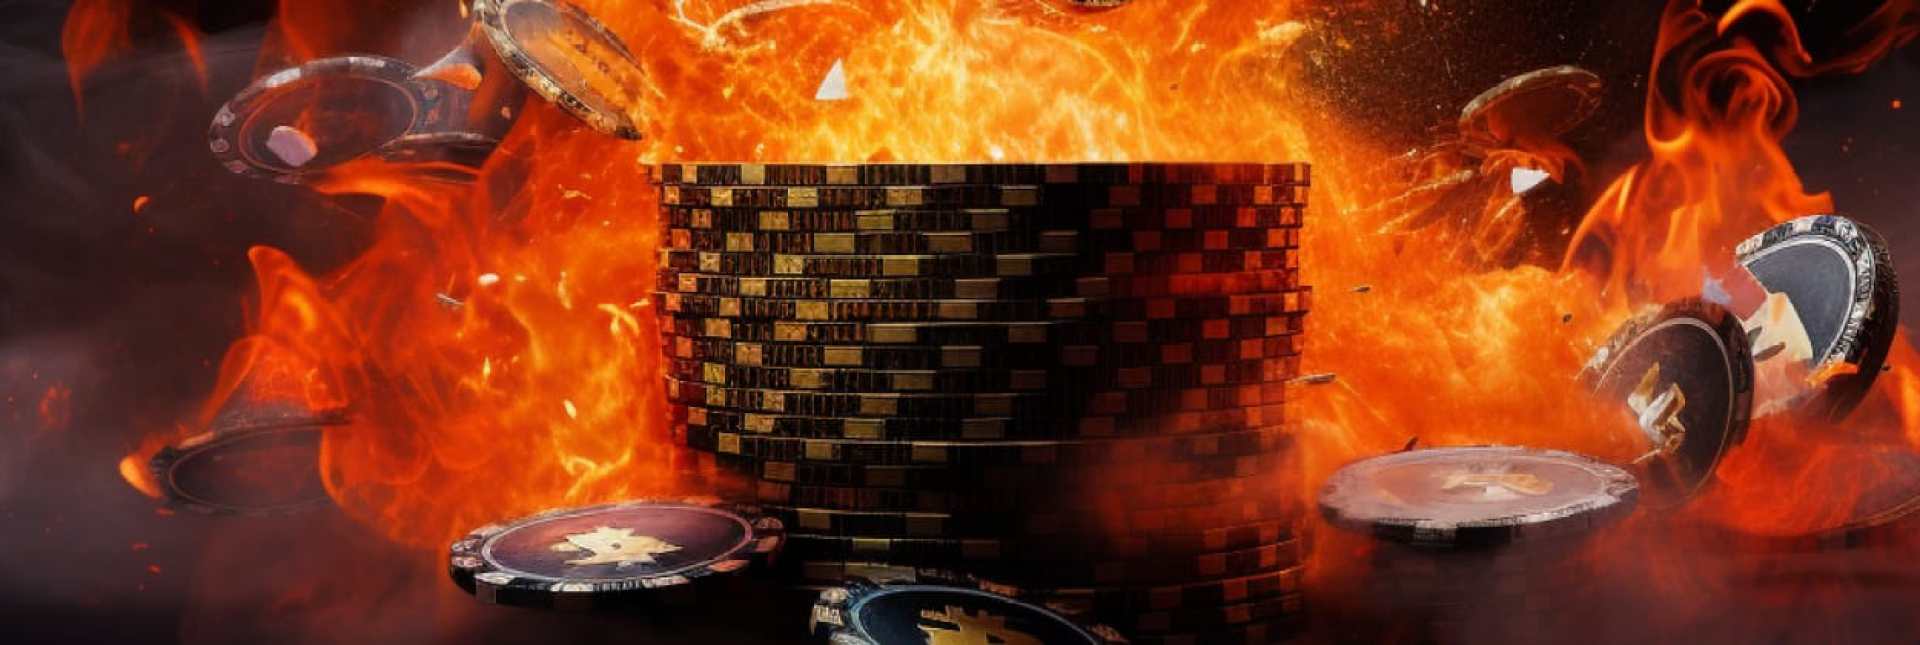 Avoid betting impulsivly on bitcoin blackjack